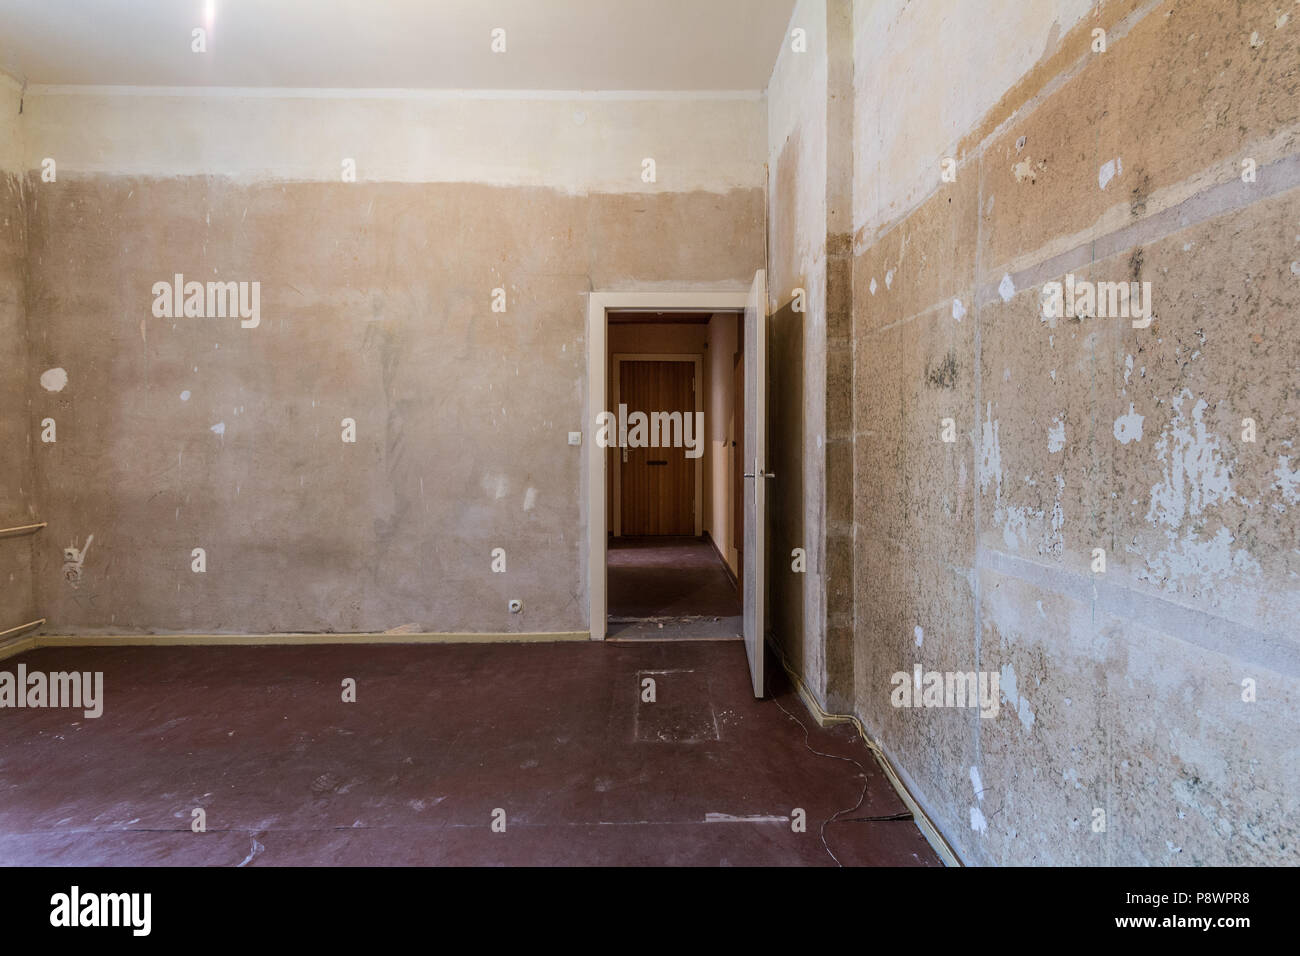 Leeren Raum vor der Sanierung - Renovieren Wohnung Stockfoto